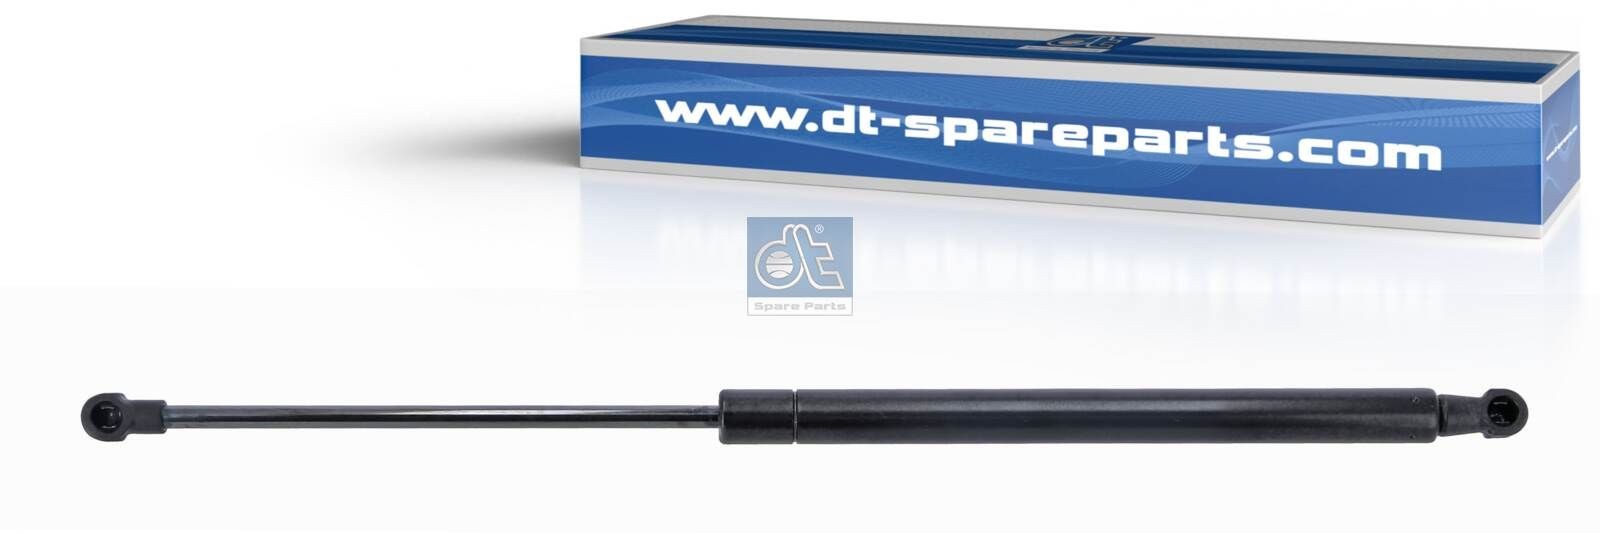 DT Spare Parts 3.80811 Tailgate strut 81970060053